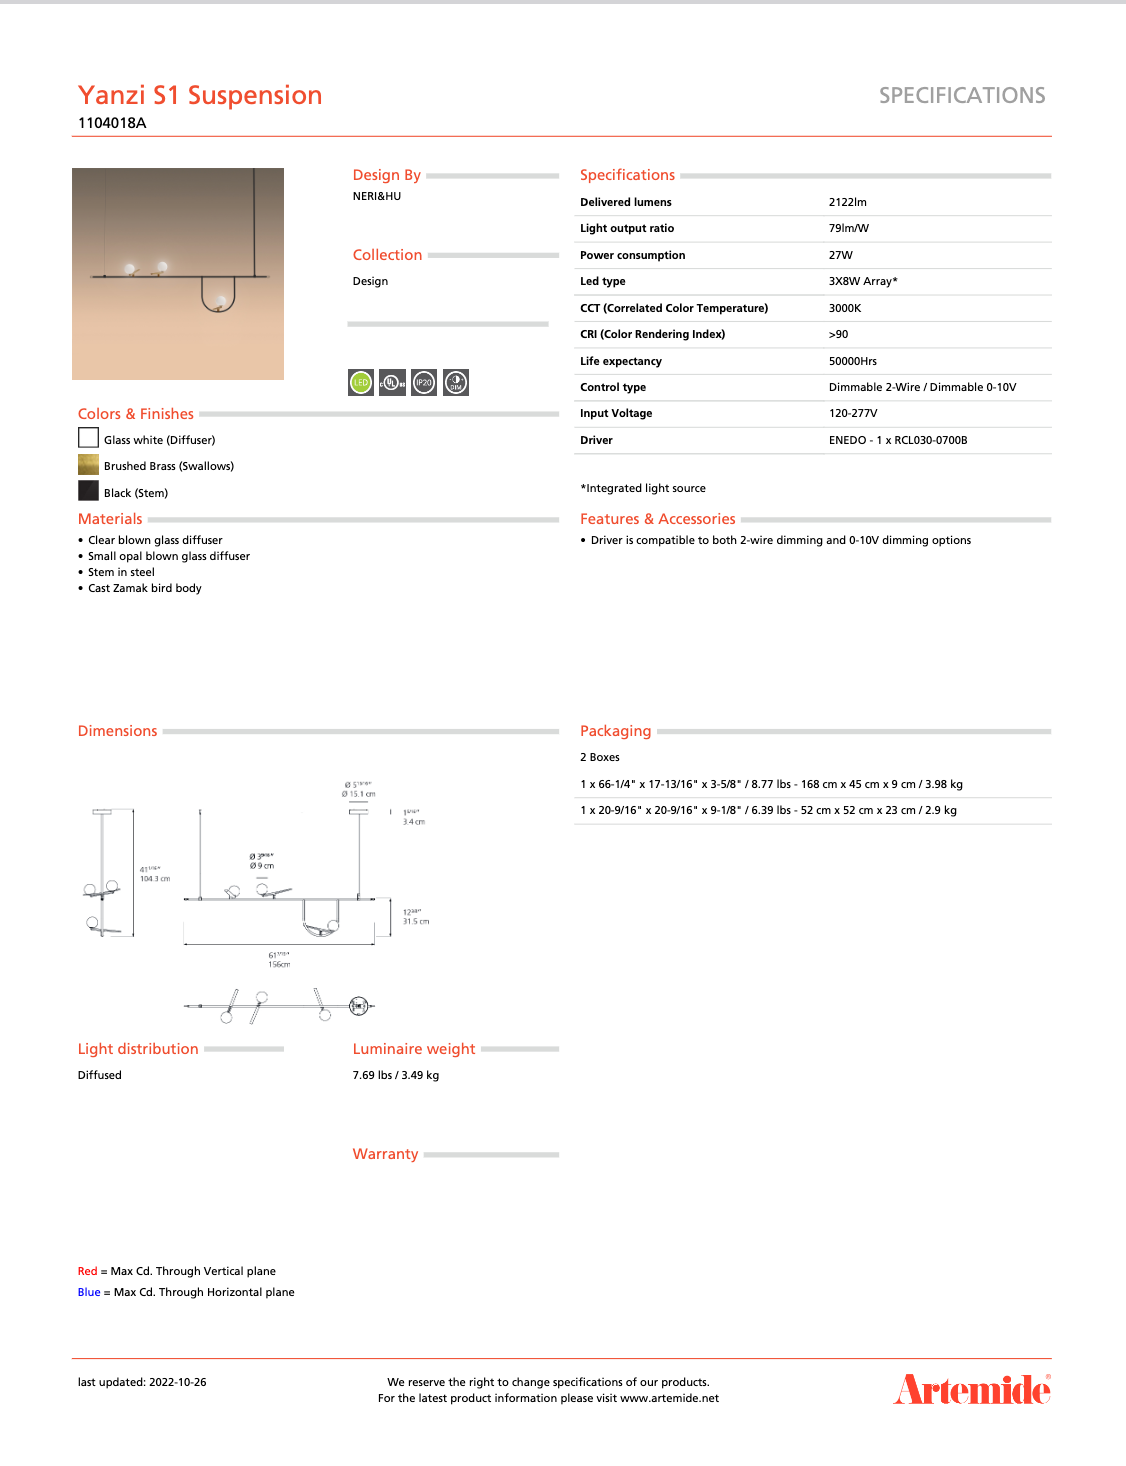 Artemide Yanzi SC1 - Luxury Hanging Light Fixture